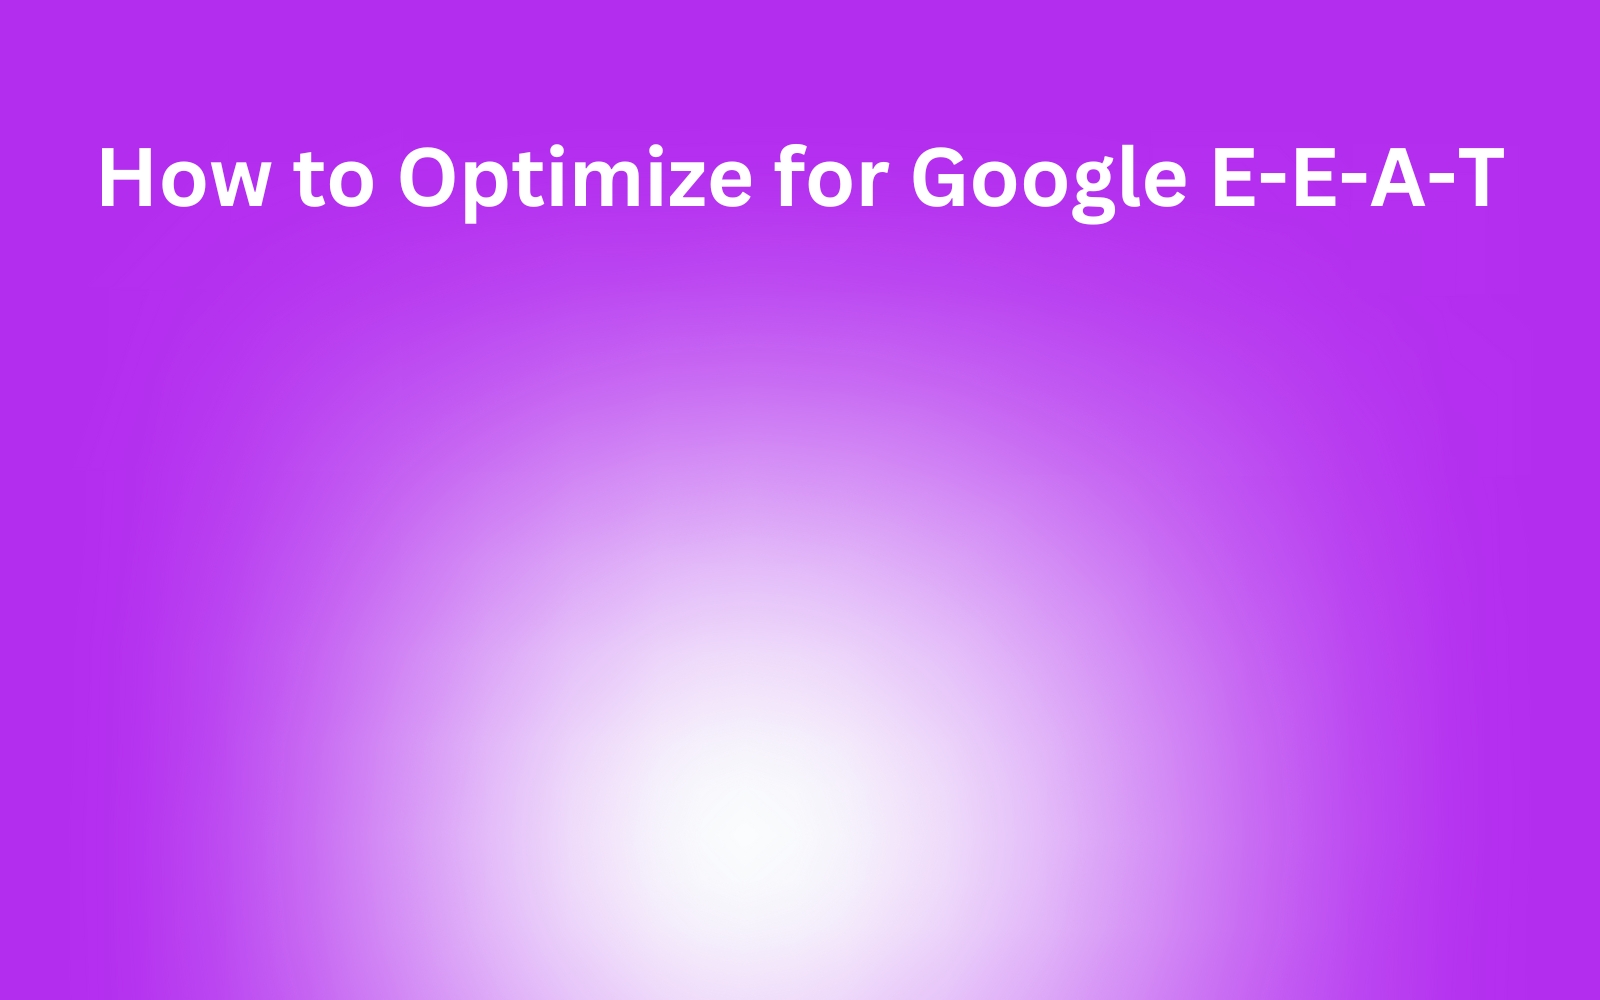 How to optimize for Google E-E-A-T